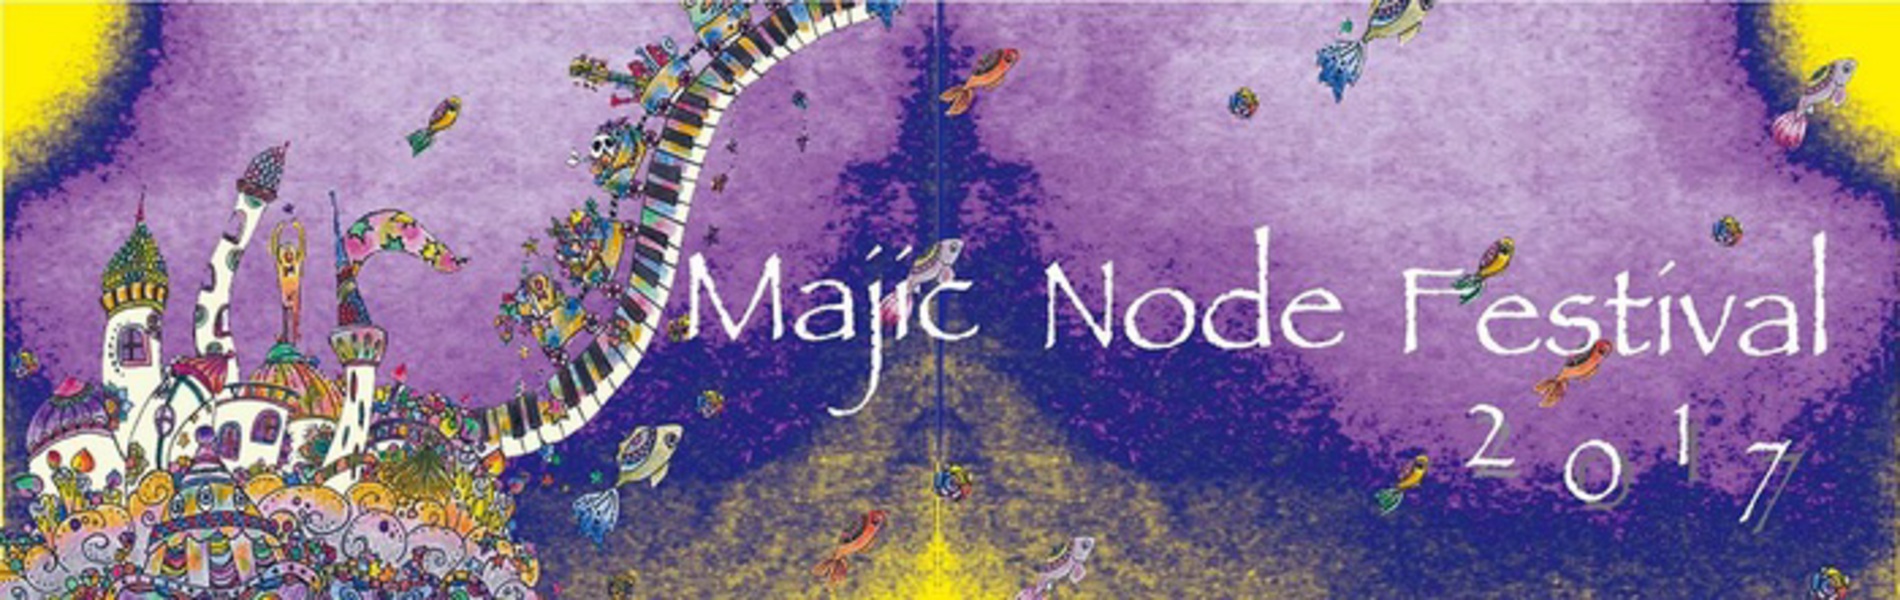 Magic Node Festival 2017